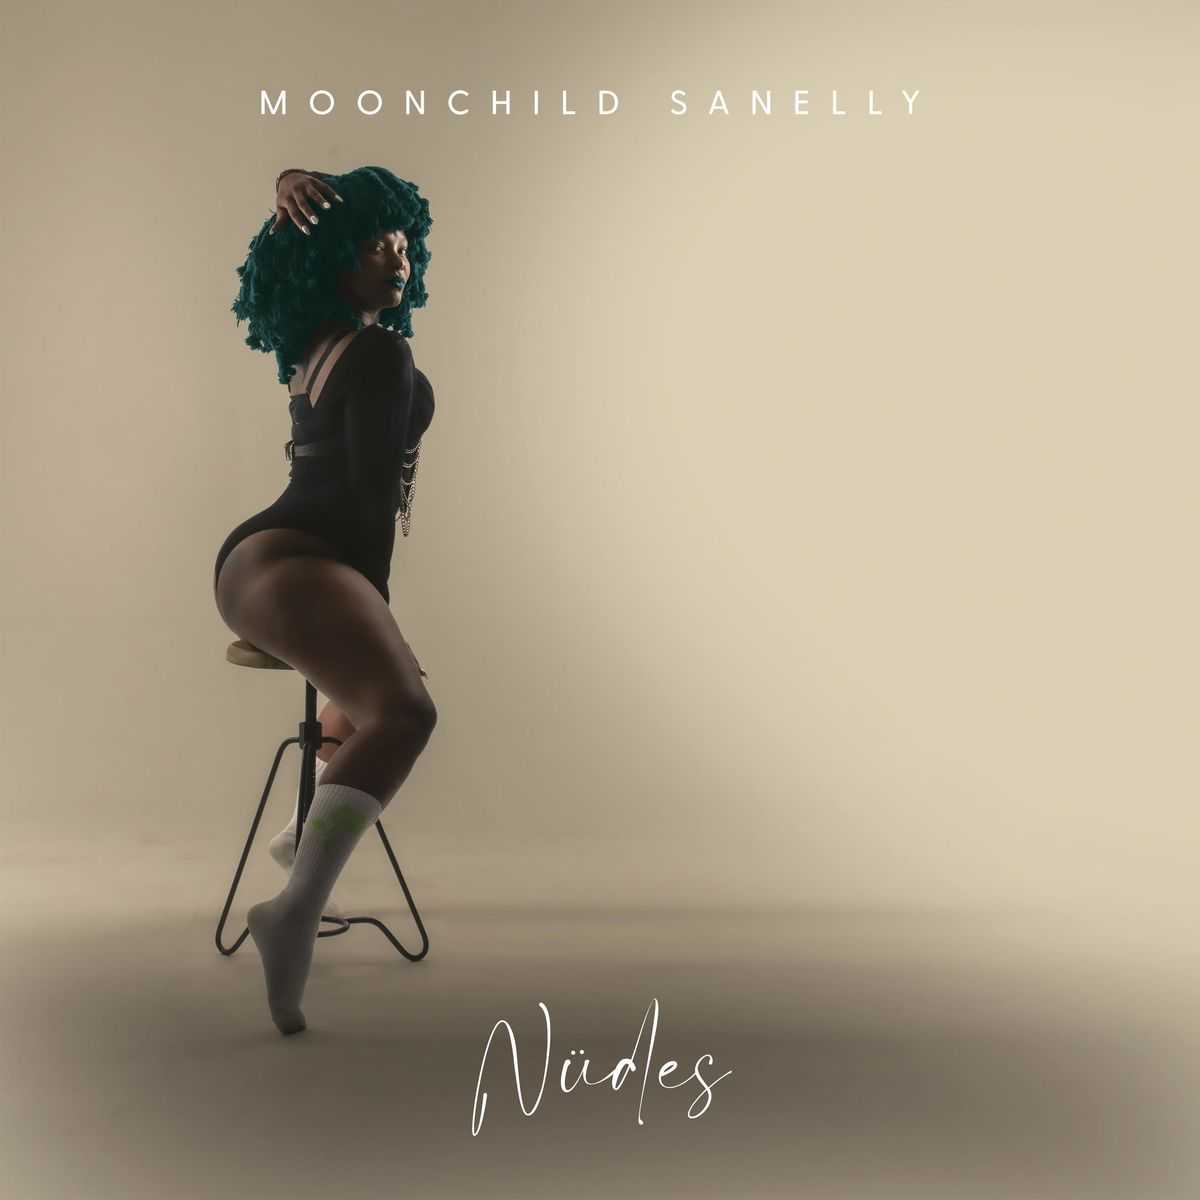 Moonchild Sanelly - Nu.des